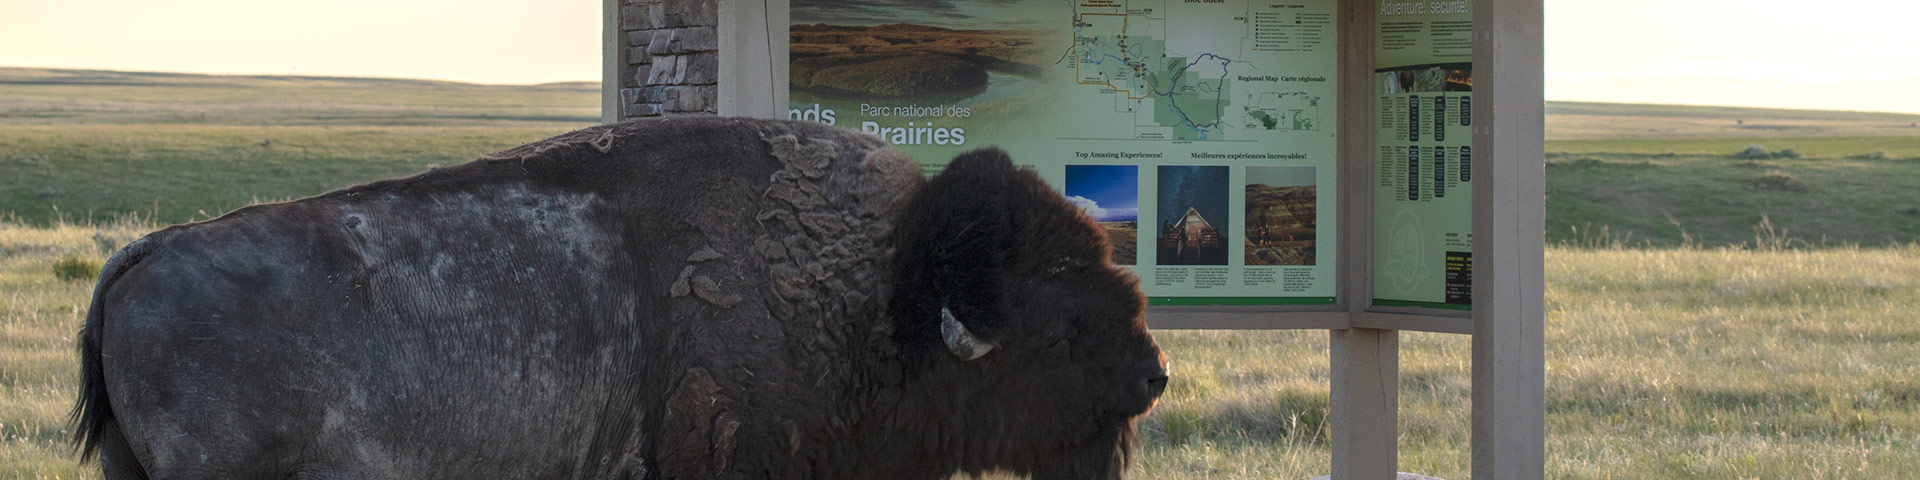 Bison près d'un panneau d'interprétation le long d'une route de l'Écocircuit, dans le bloc Ouest du parc national des Prairies. 